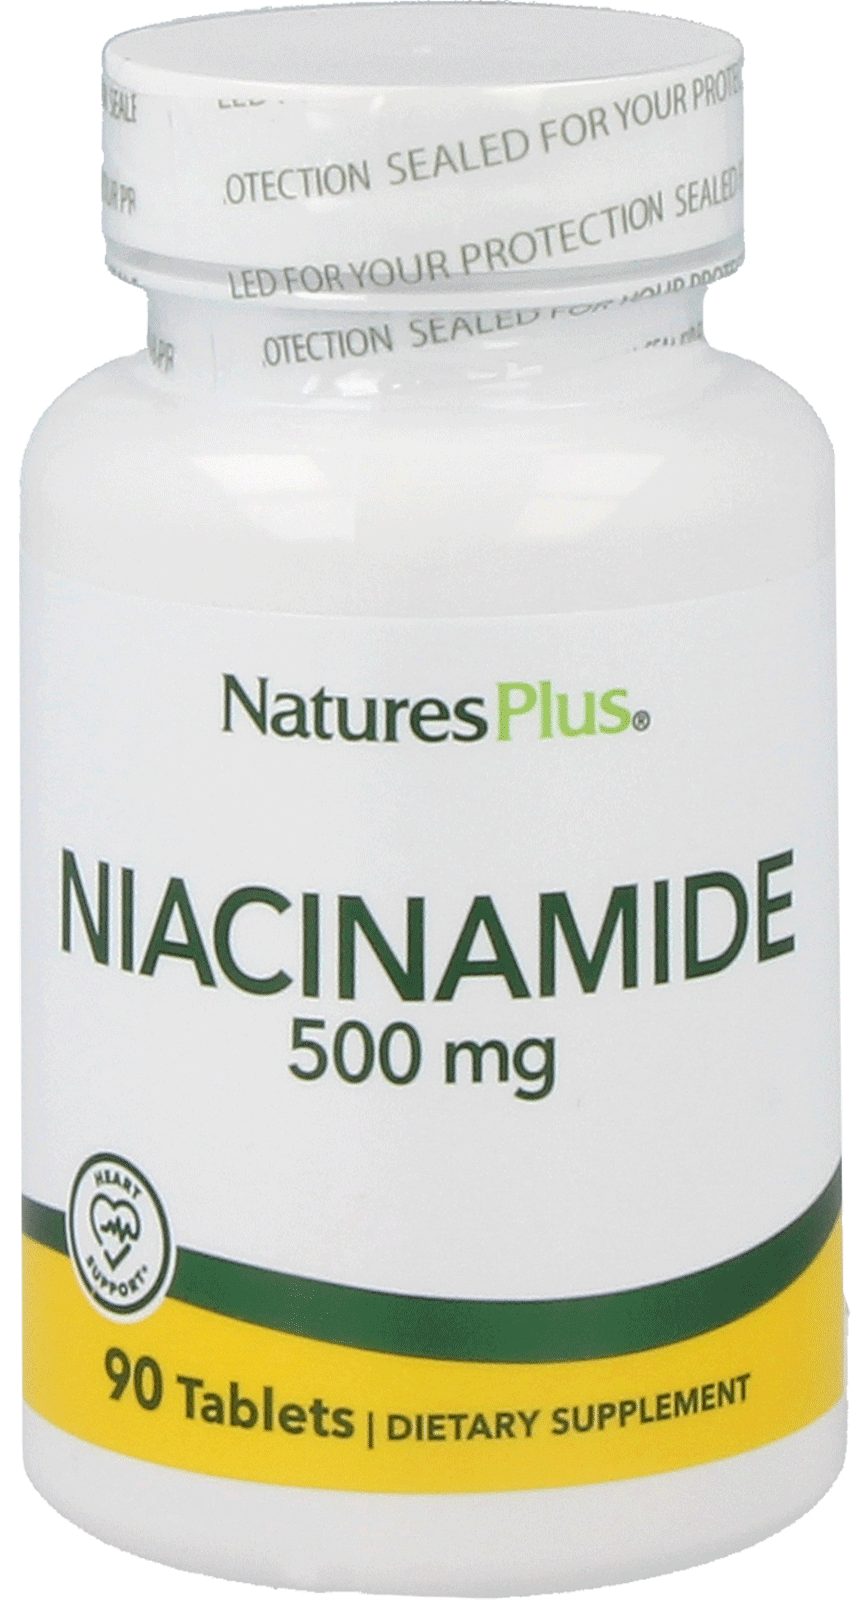 Niacinamide 500 mg 